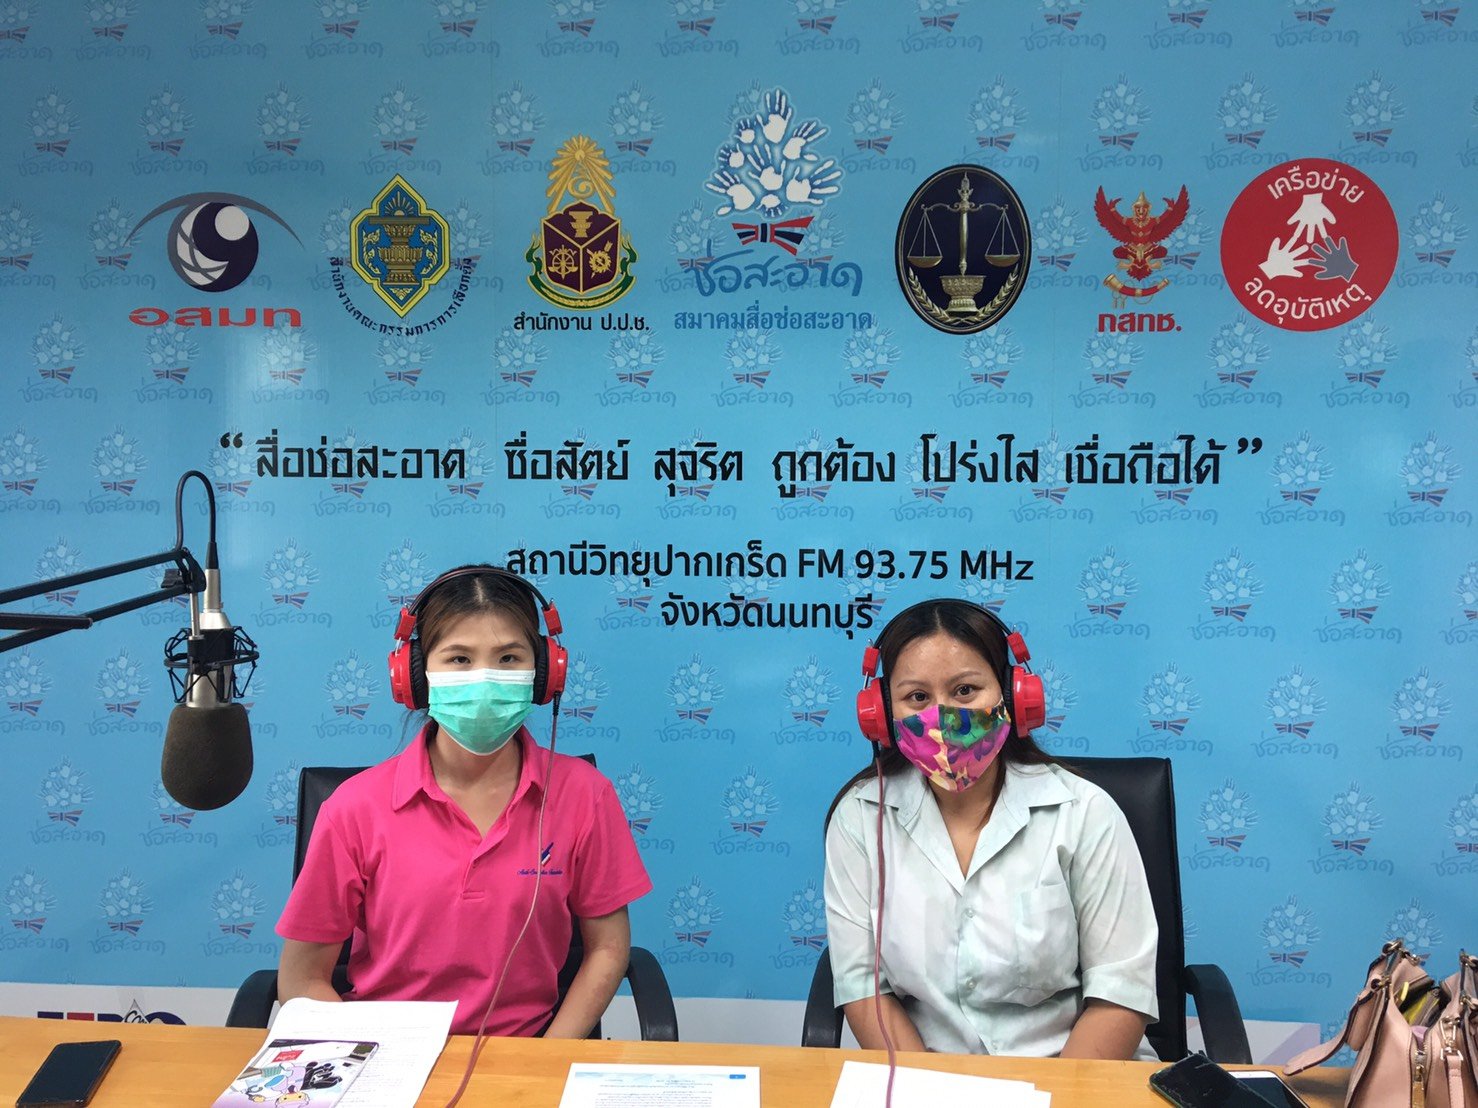 รายการ “คนไทยไม่ทนต่อการทุจริต” วันอาทิตย์ที่ 6 มิถุนายน 2564 เวลา 18.30-19.00 น.